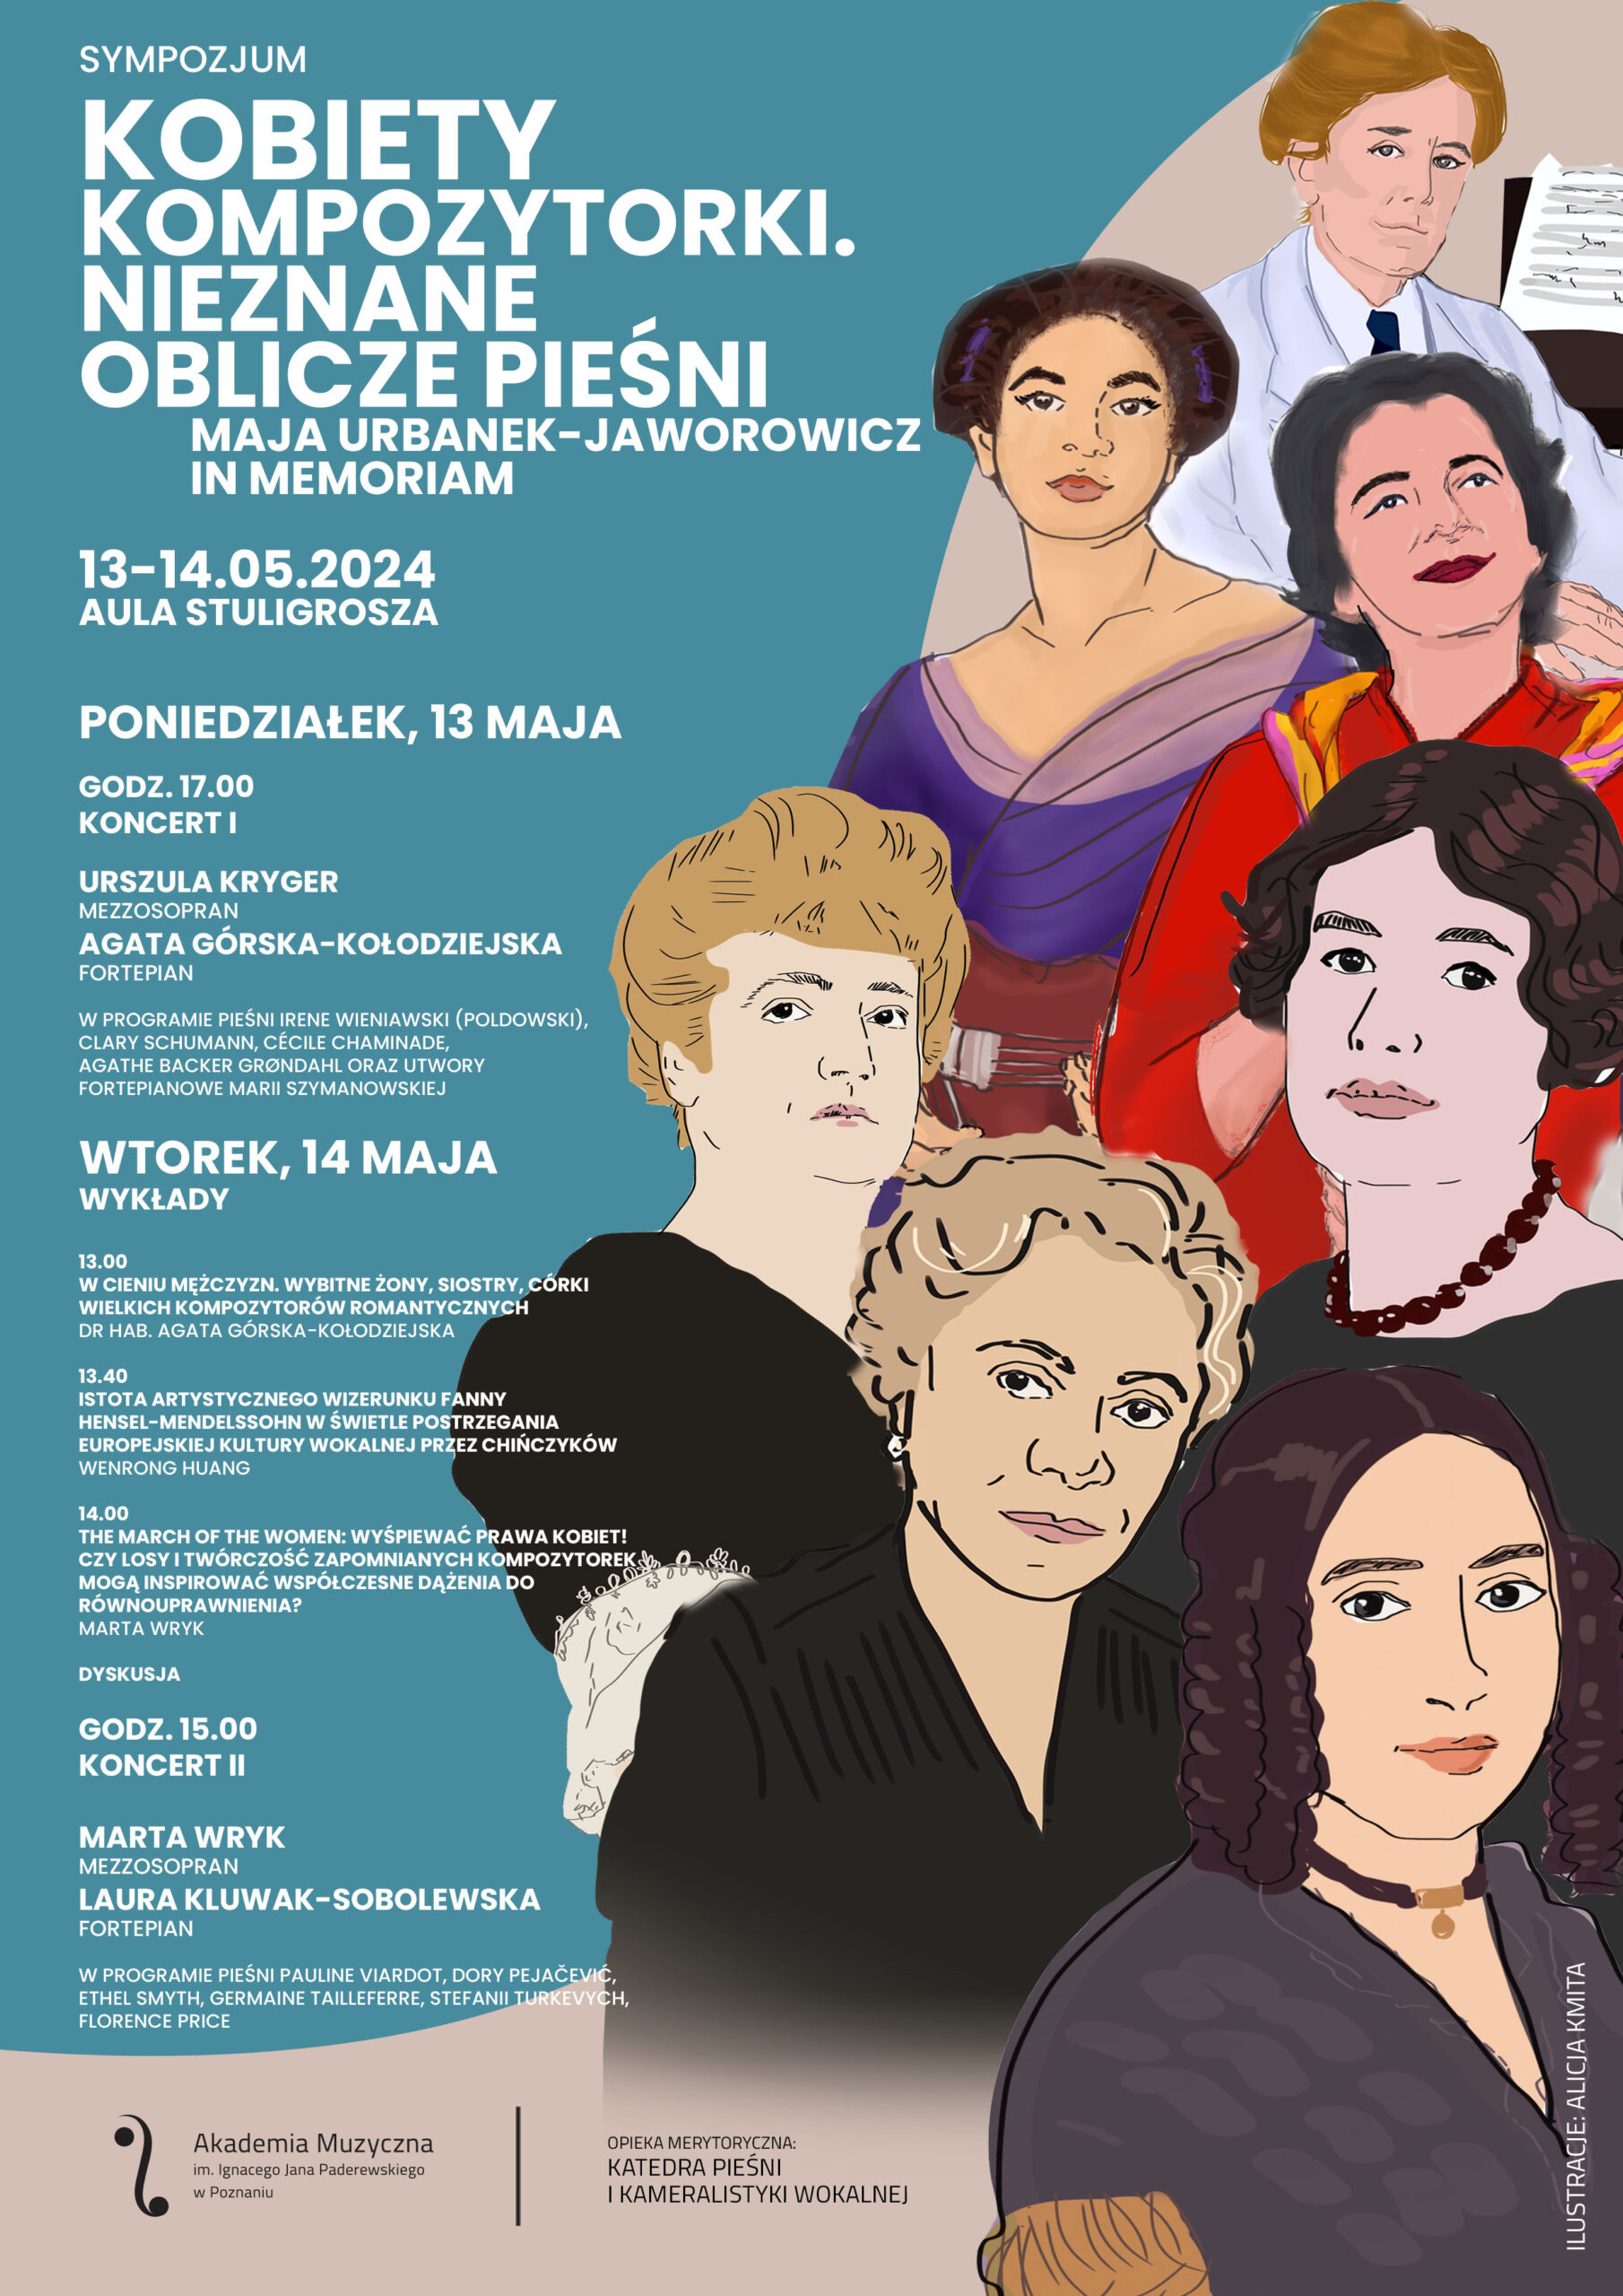 Plakat zawiera informacje na temat Sympozjum Kobiety kompozytorki